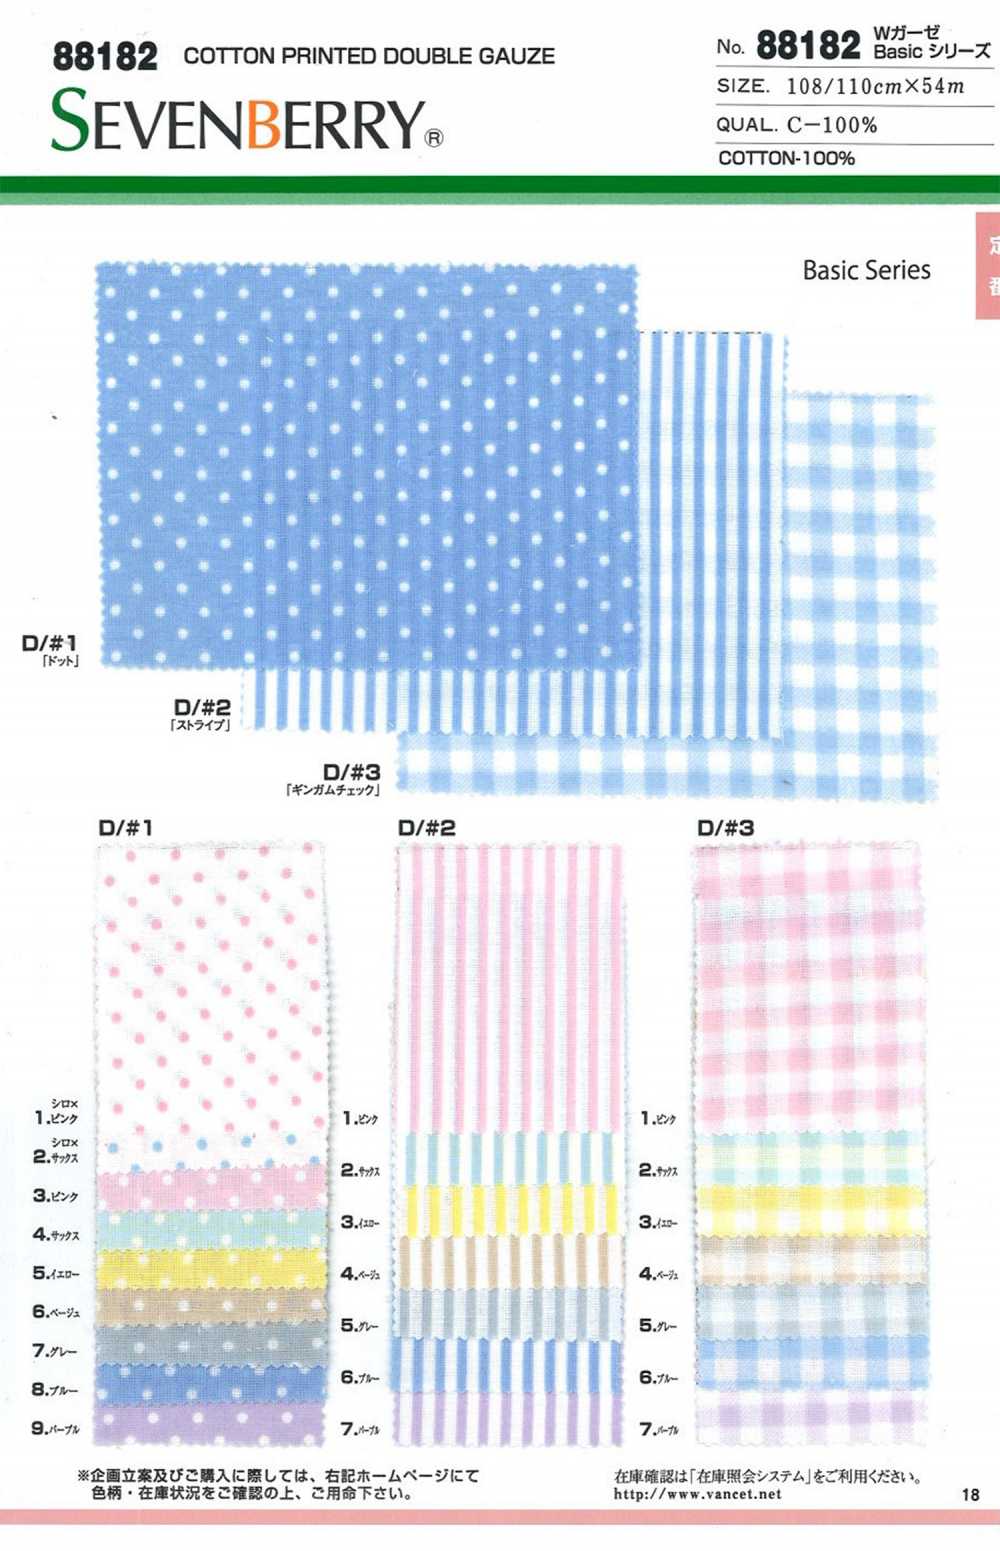 88182 SEVENBERRY W Gauze Basic Series[Textile / Fabric] VANCET